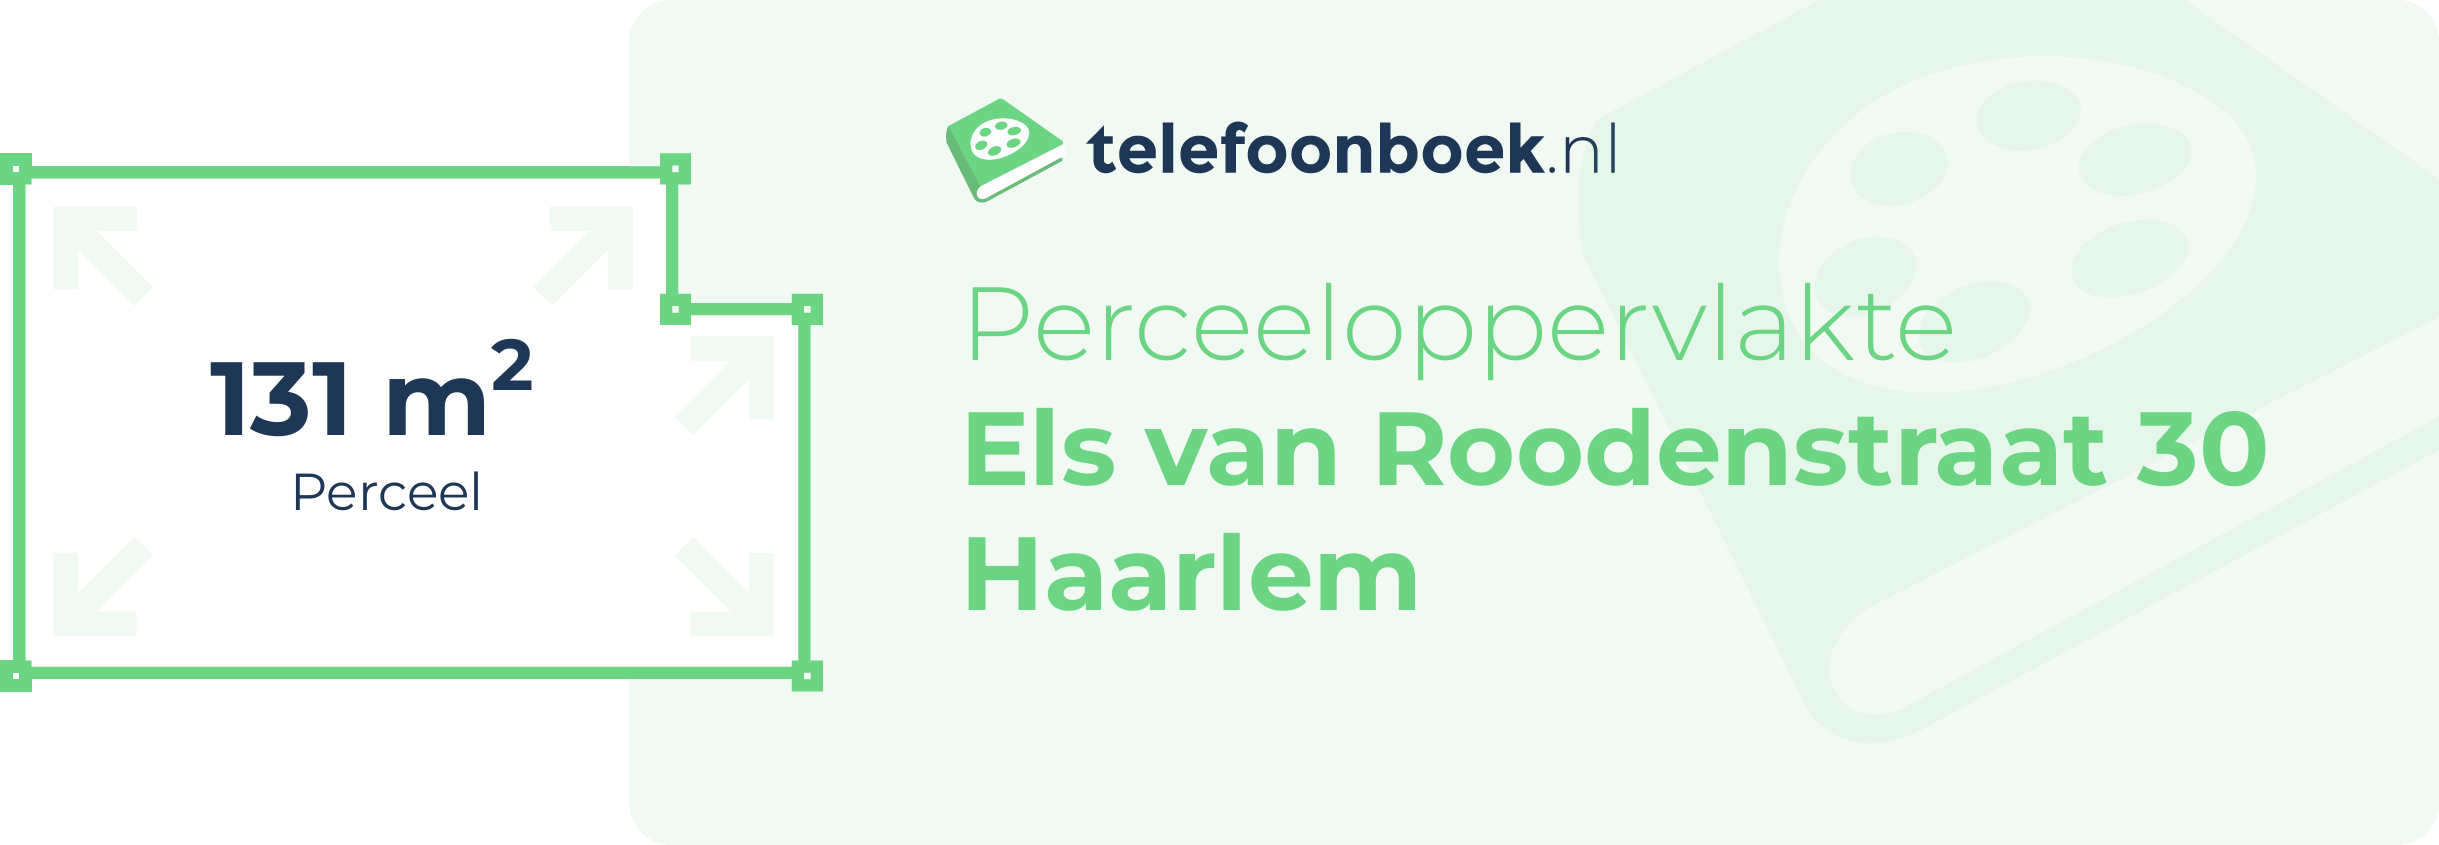 Perceeloppervlakte Els Van Roodenstraat 30 Haarlem